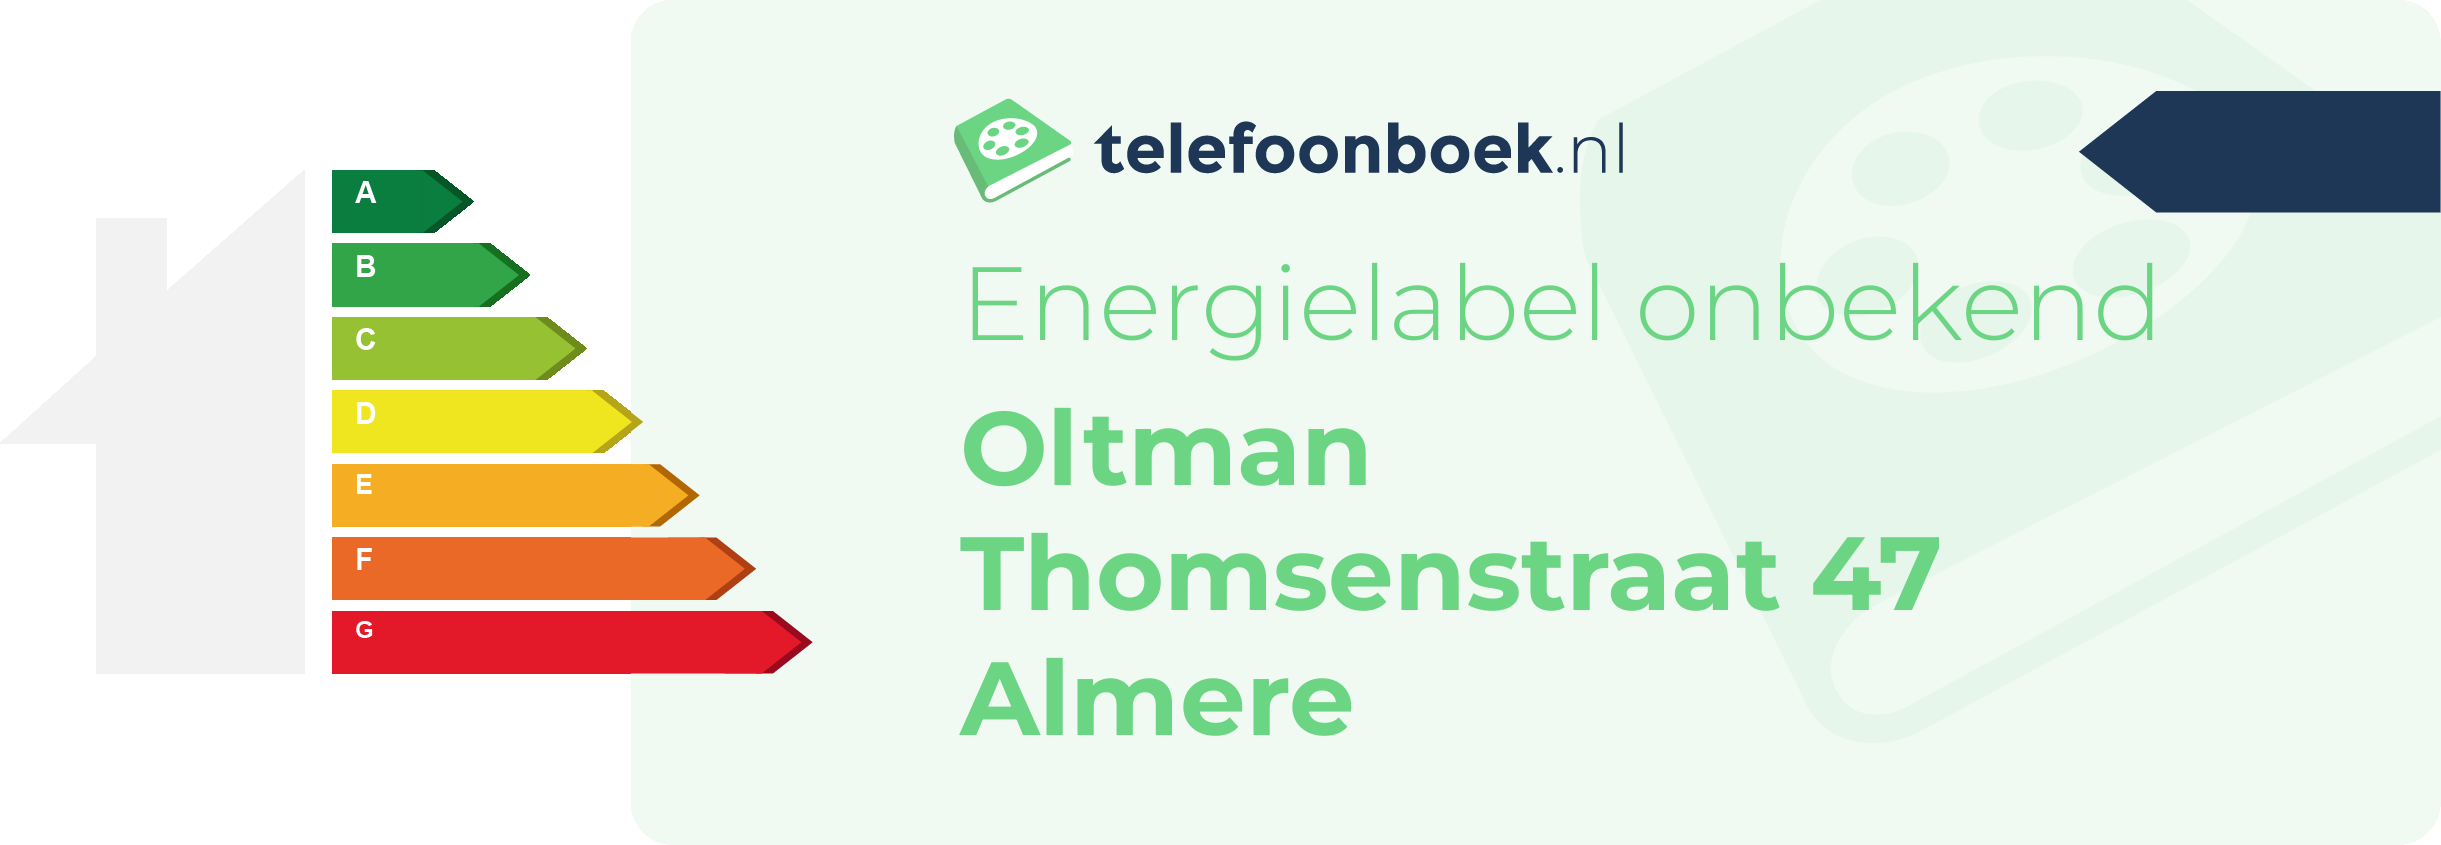 Energielabel Oltman Thomsenstraat 47 Almere